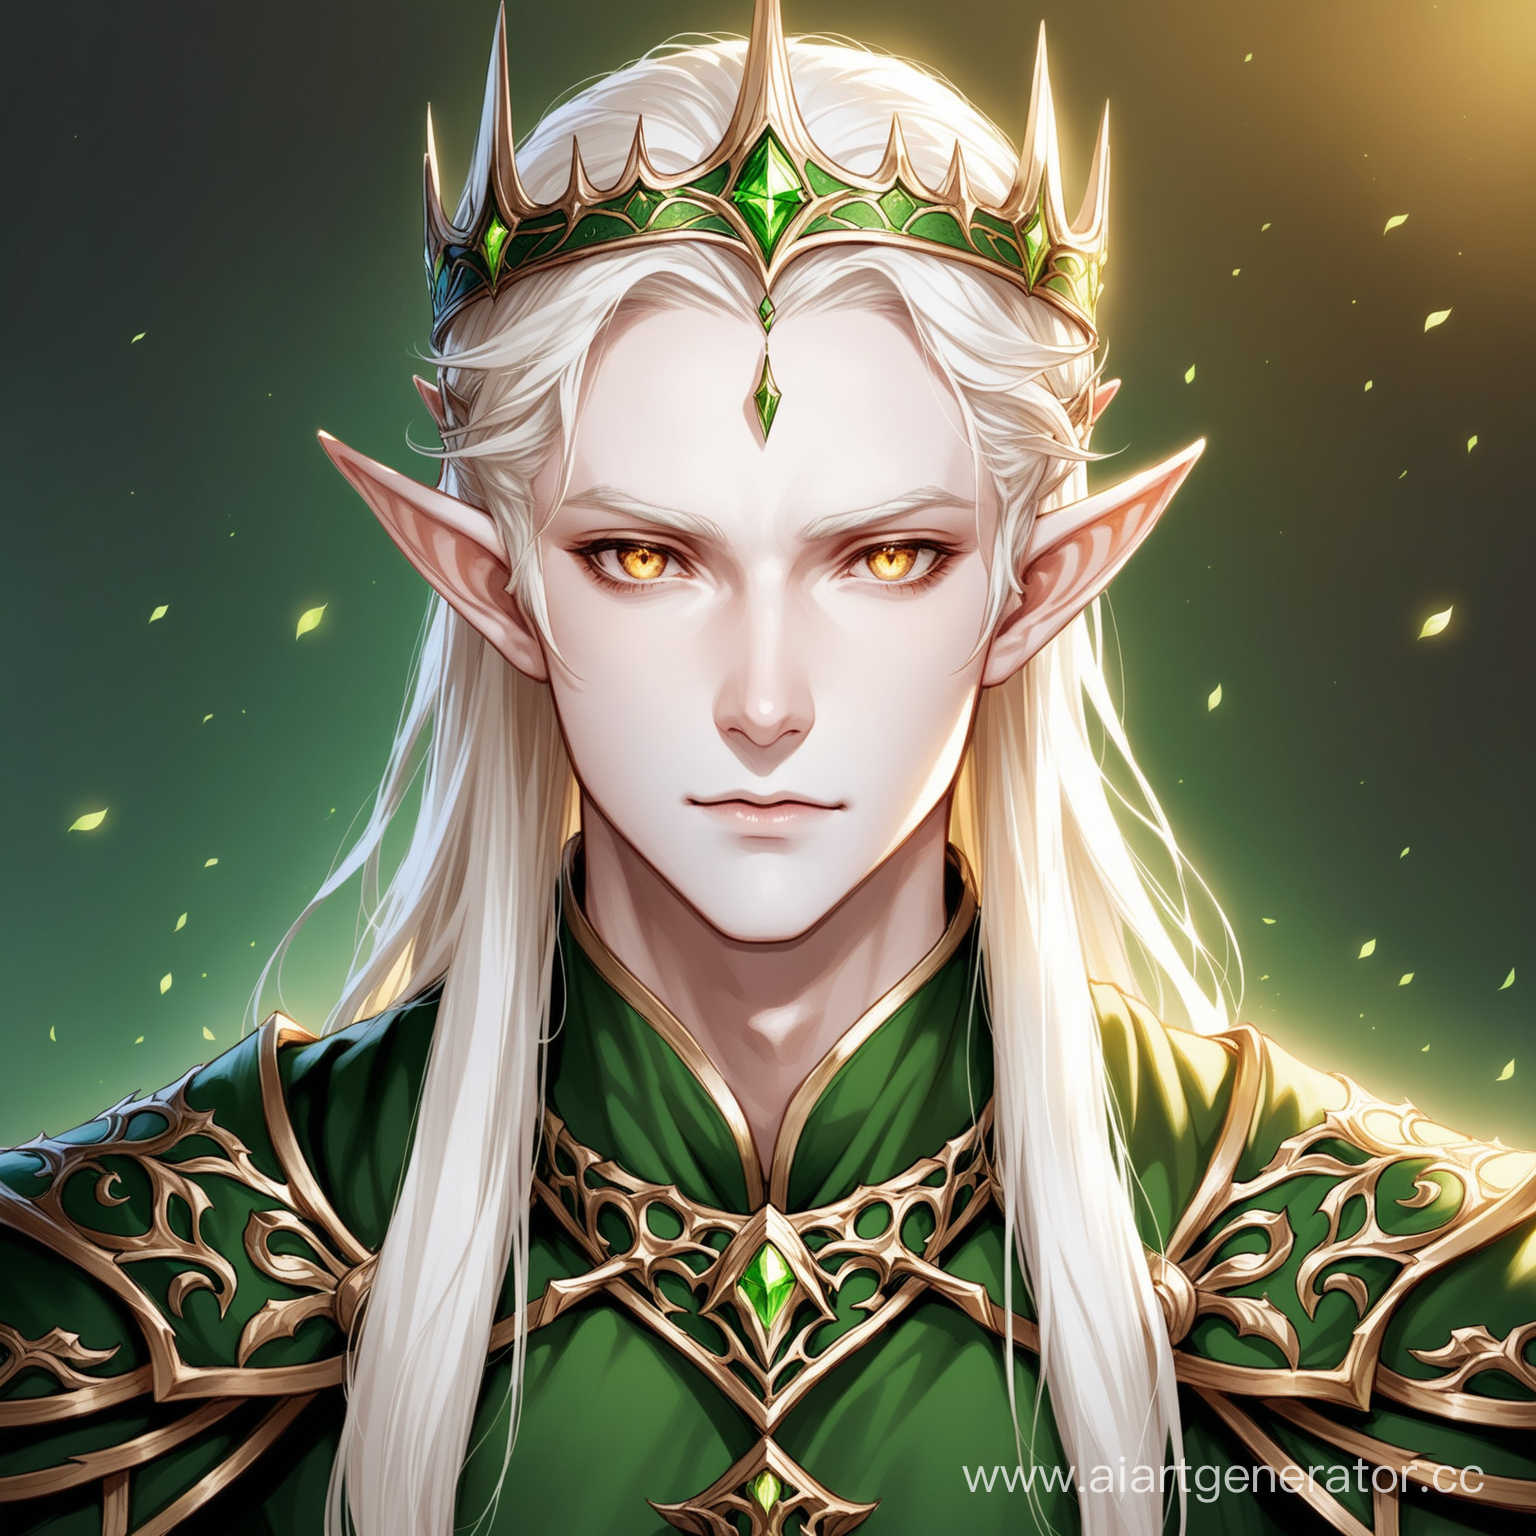 Король эльфов с светлыми волосами, бледно-белой кожей и коричневыми глазами